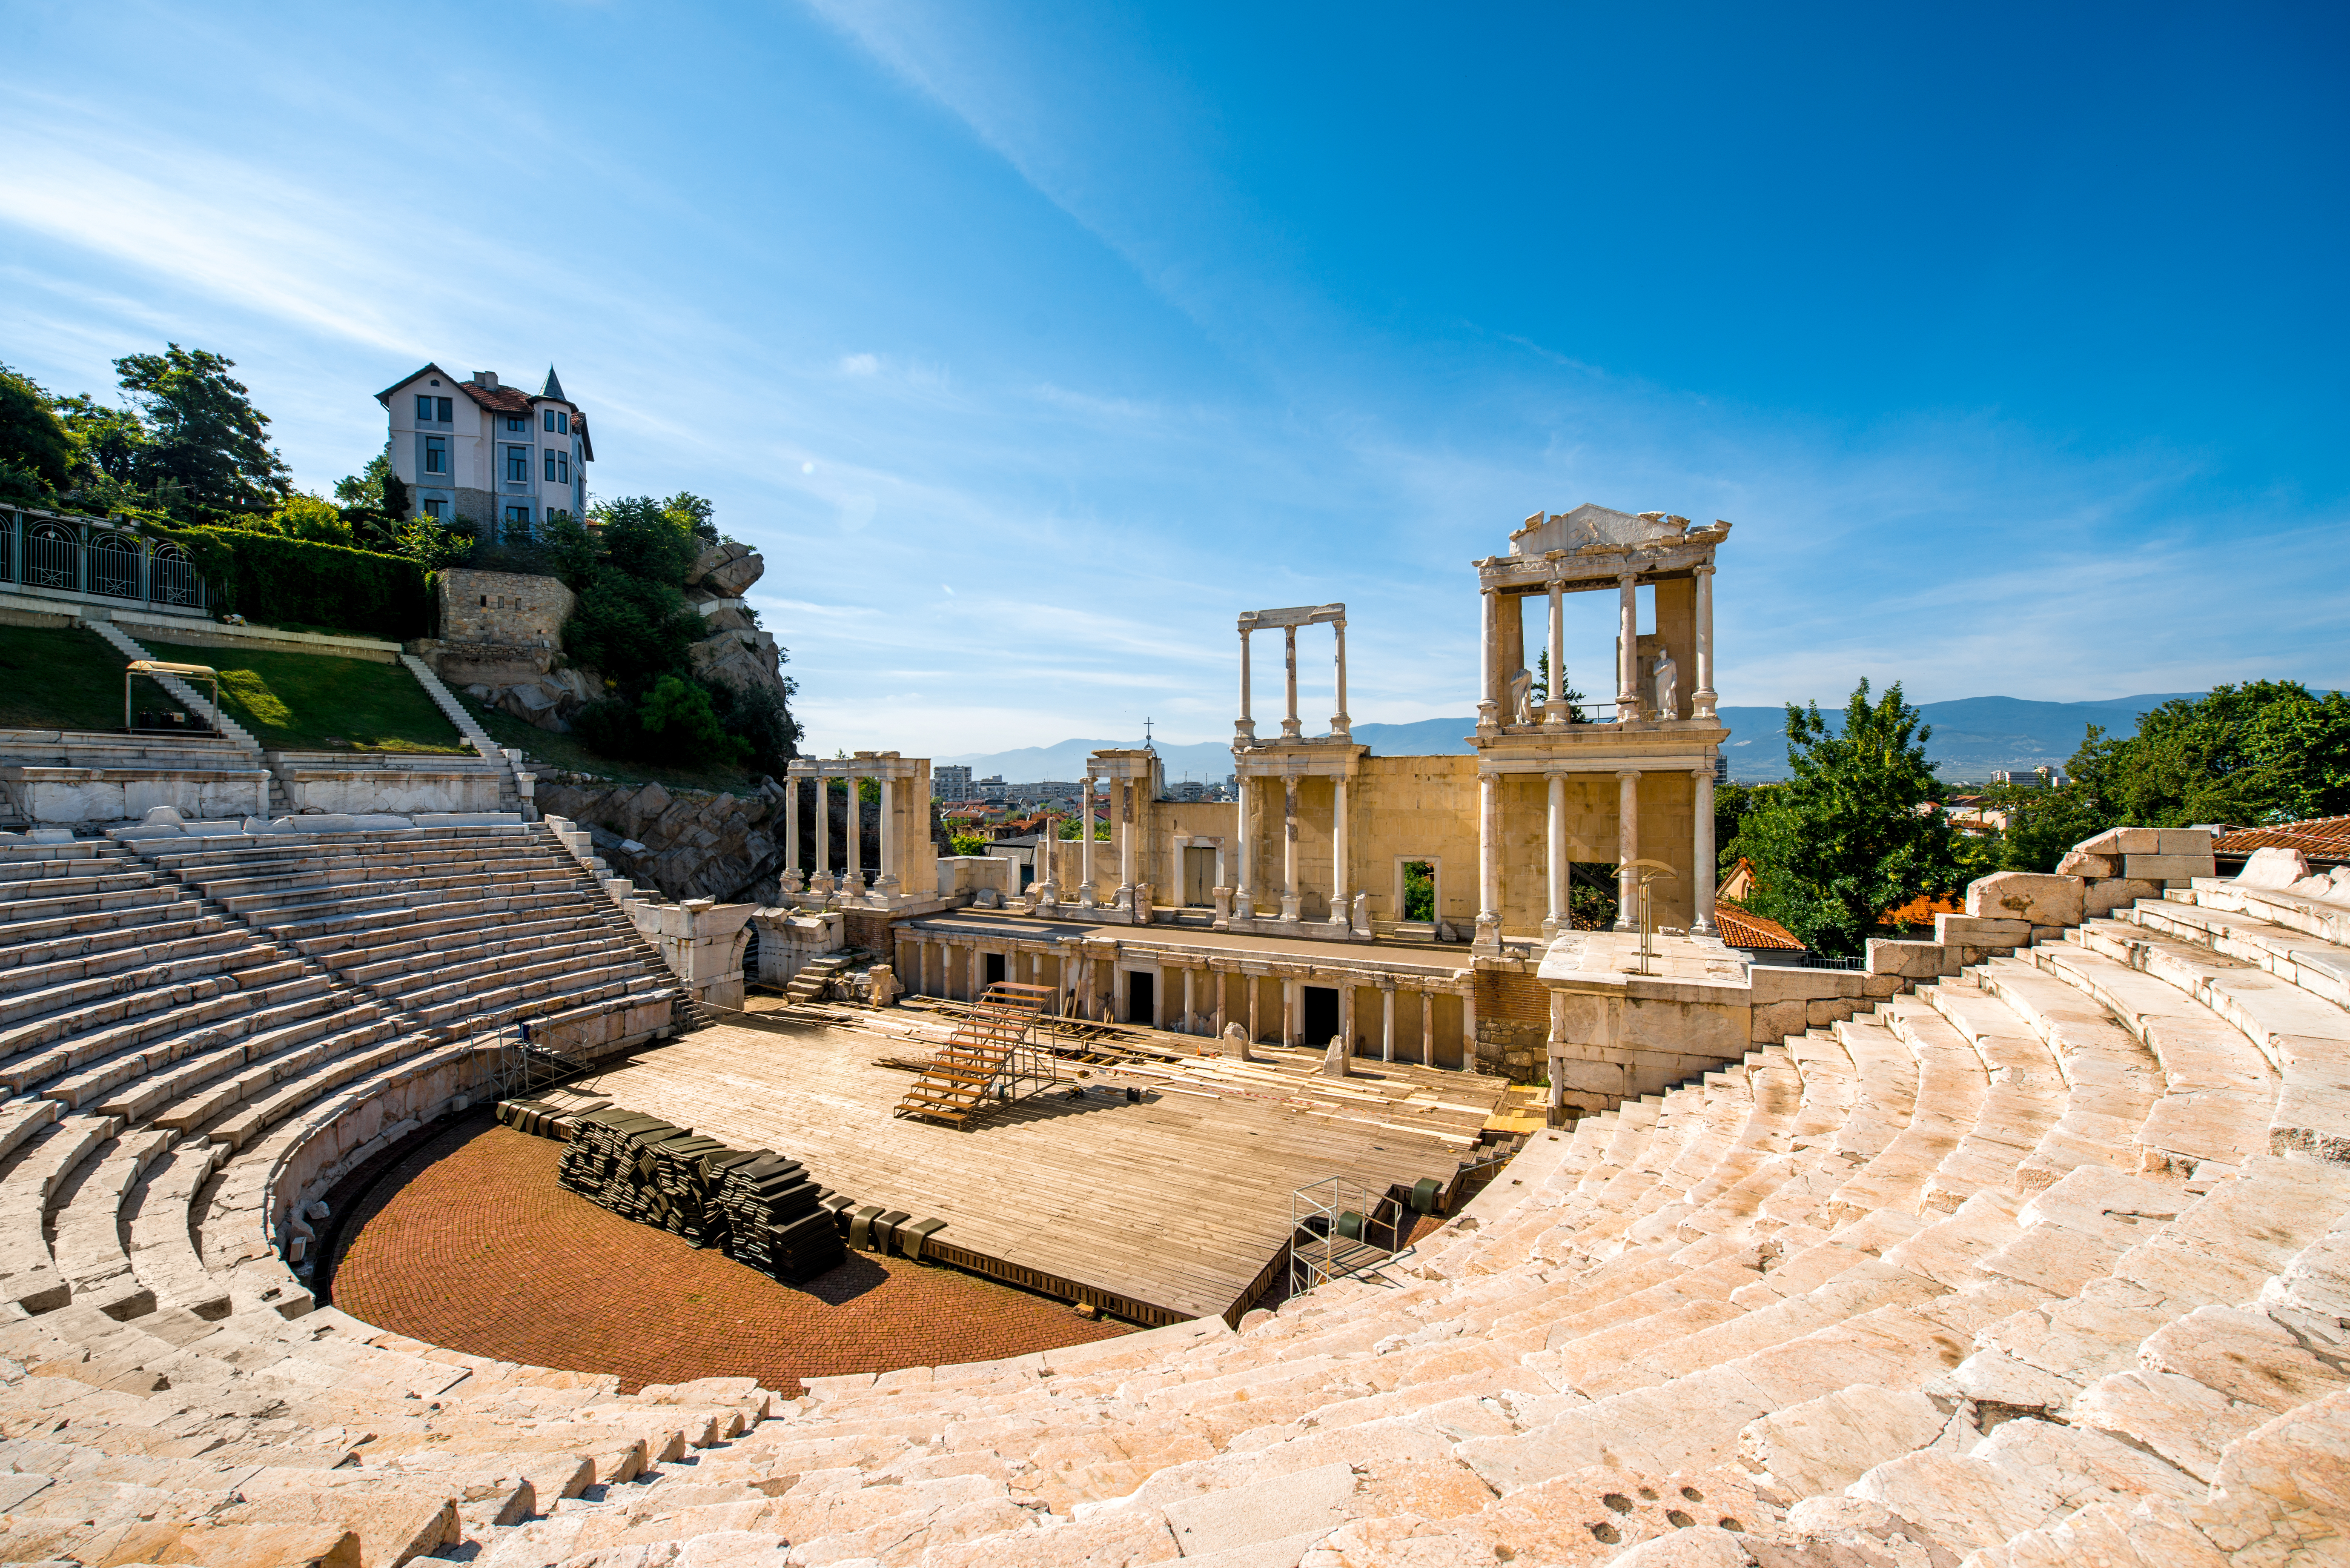 Das alte römische Amphitheater wird immer noch als Veranstaltungsort für Shows und Aufführungen genutzt